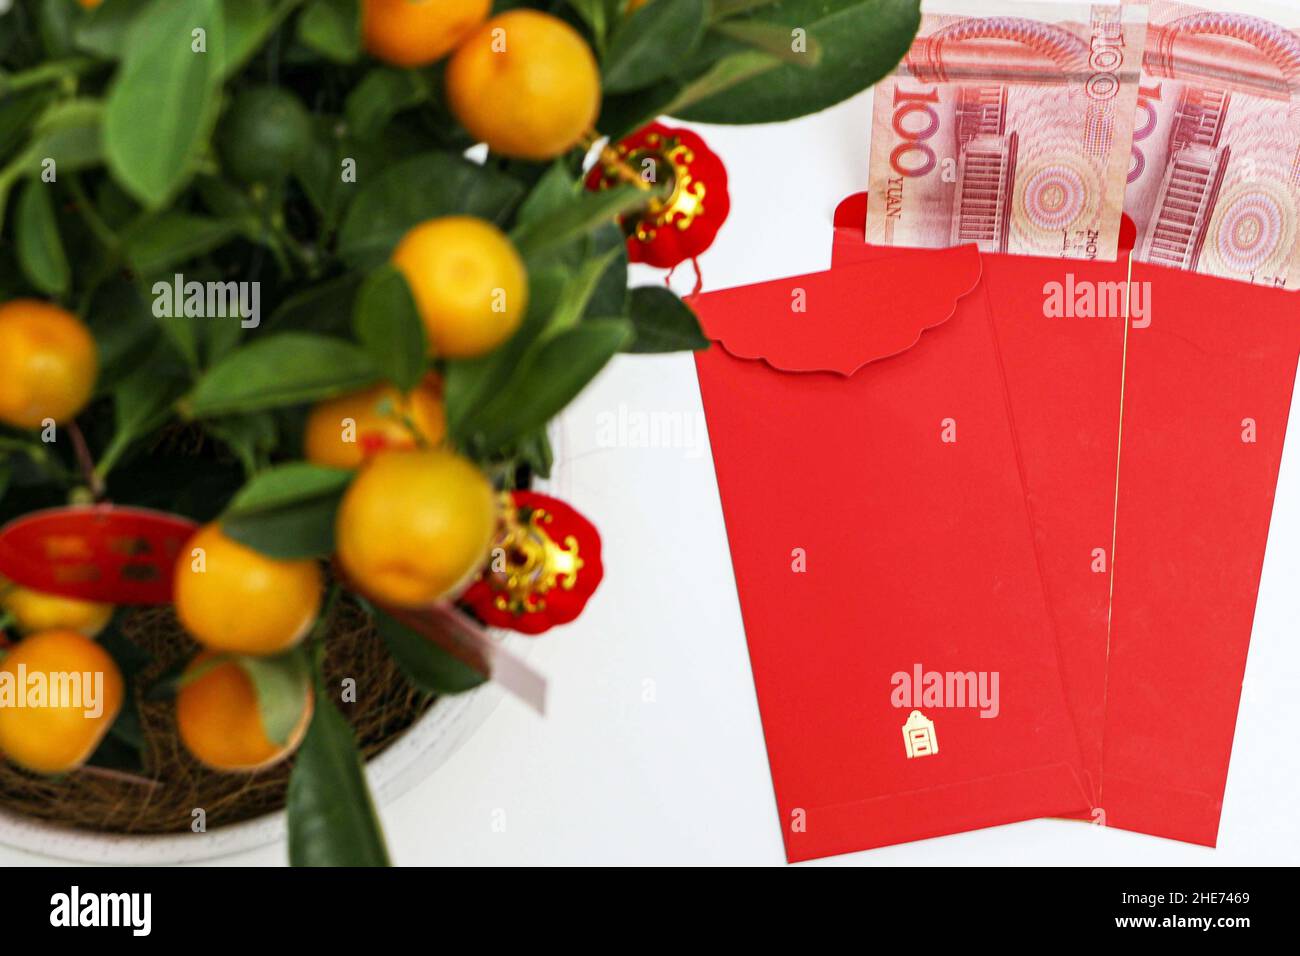 Enveloppes rouges du nouvel an chinois avec 100 yuans chinois à l'intérieur, sous la plante Kumquat chanceux, les kumquats représentent la richesse, la prospérité et la chance en Chine Banque D'Images